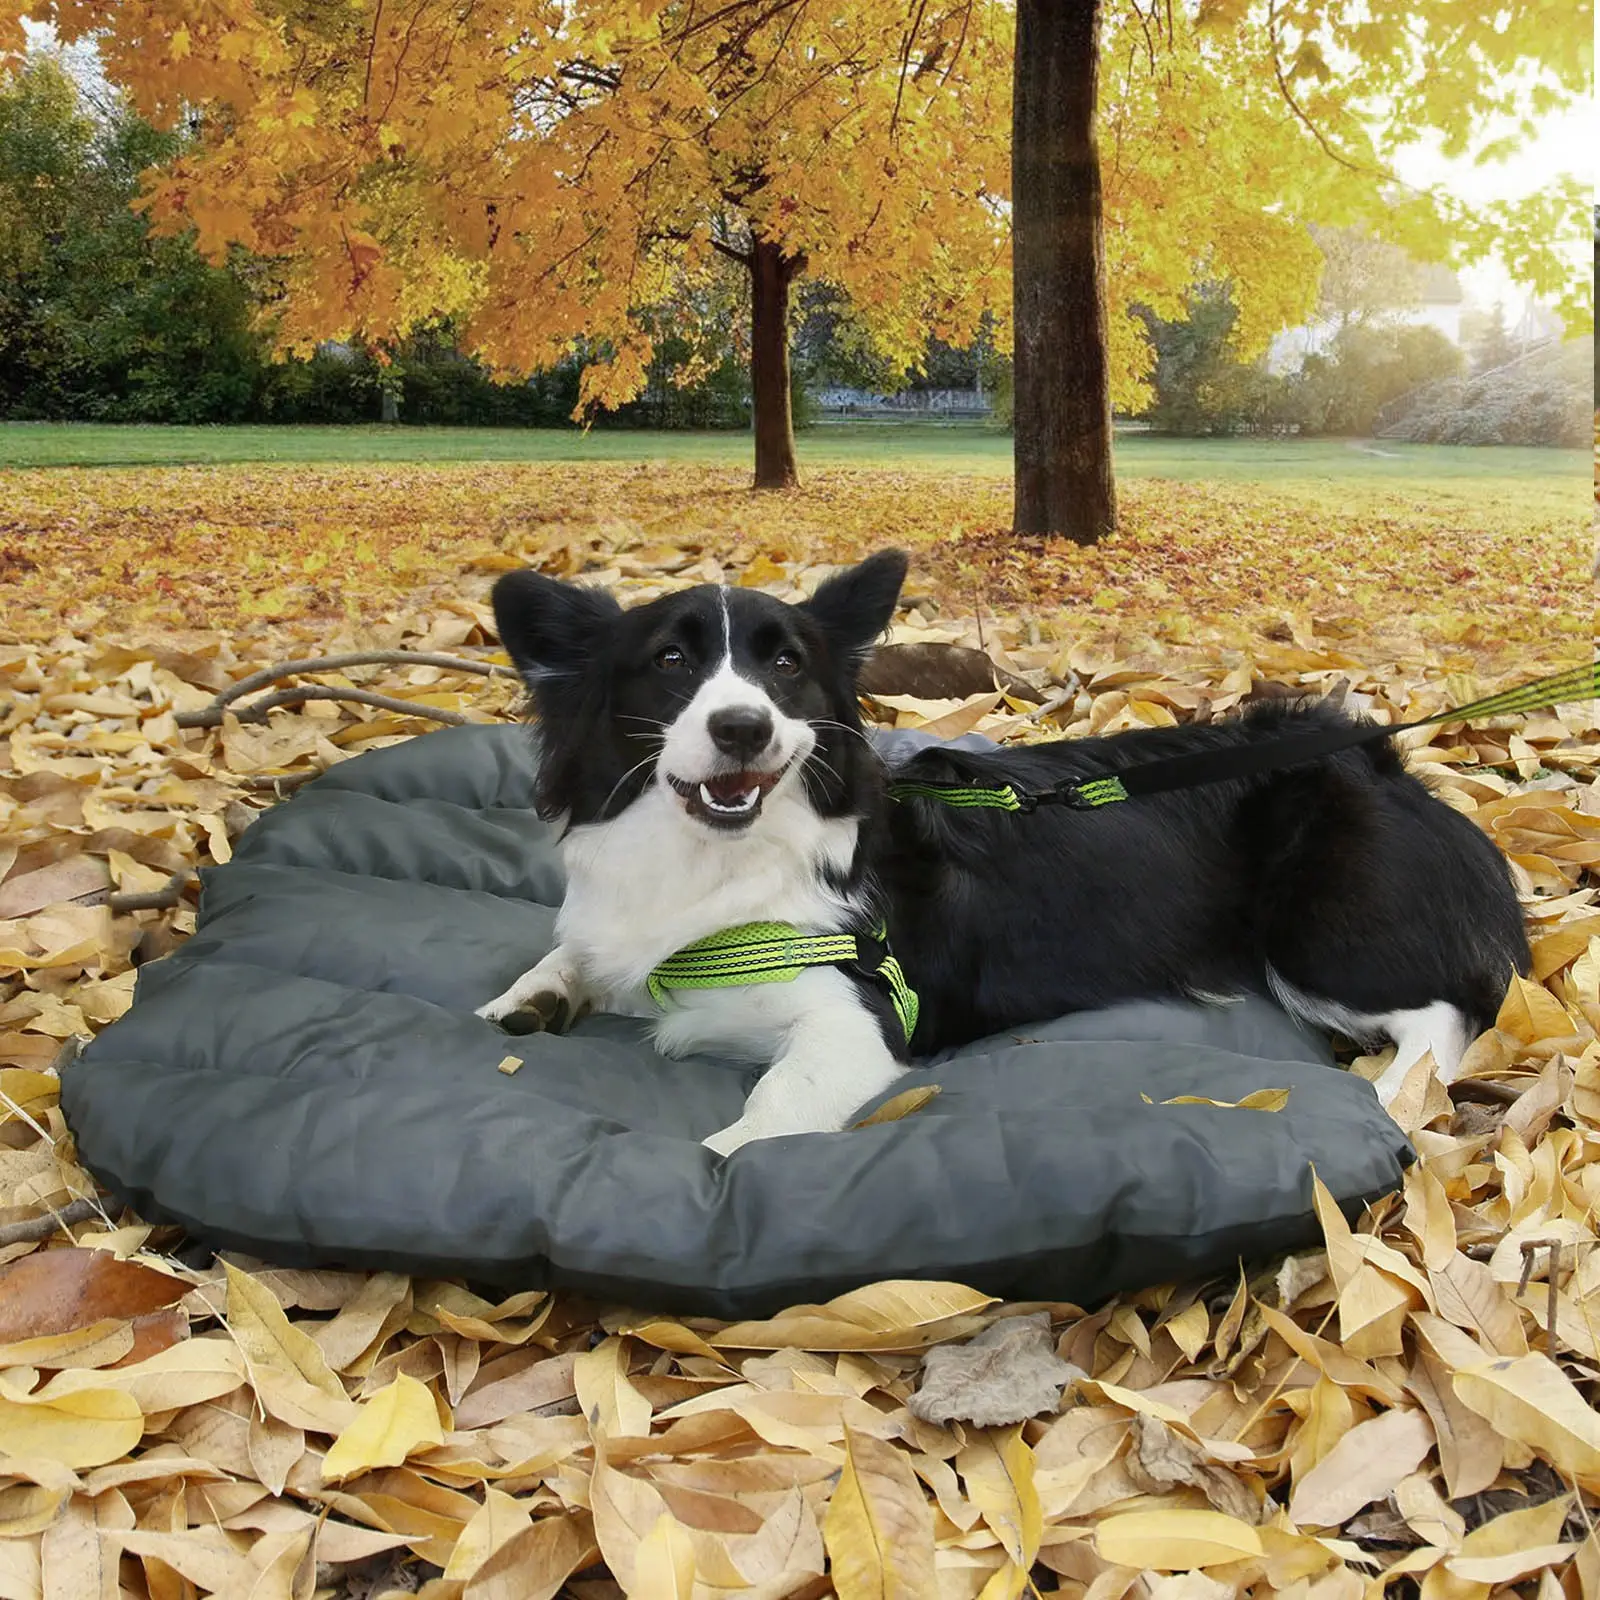 Fabricante atacado Hot Sale durável quente lavável impermeável dobrável camping ao ar livre viagem pet dog colchão cama mat